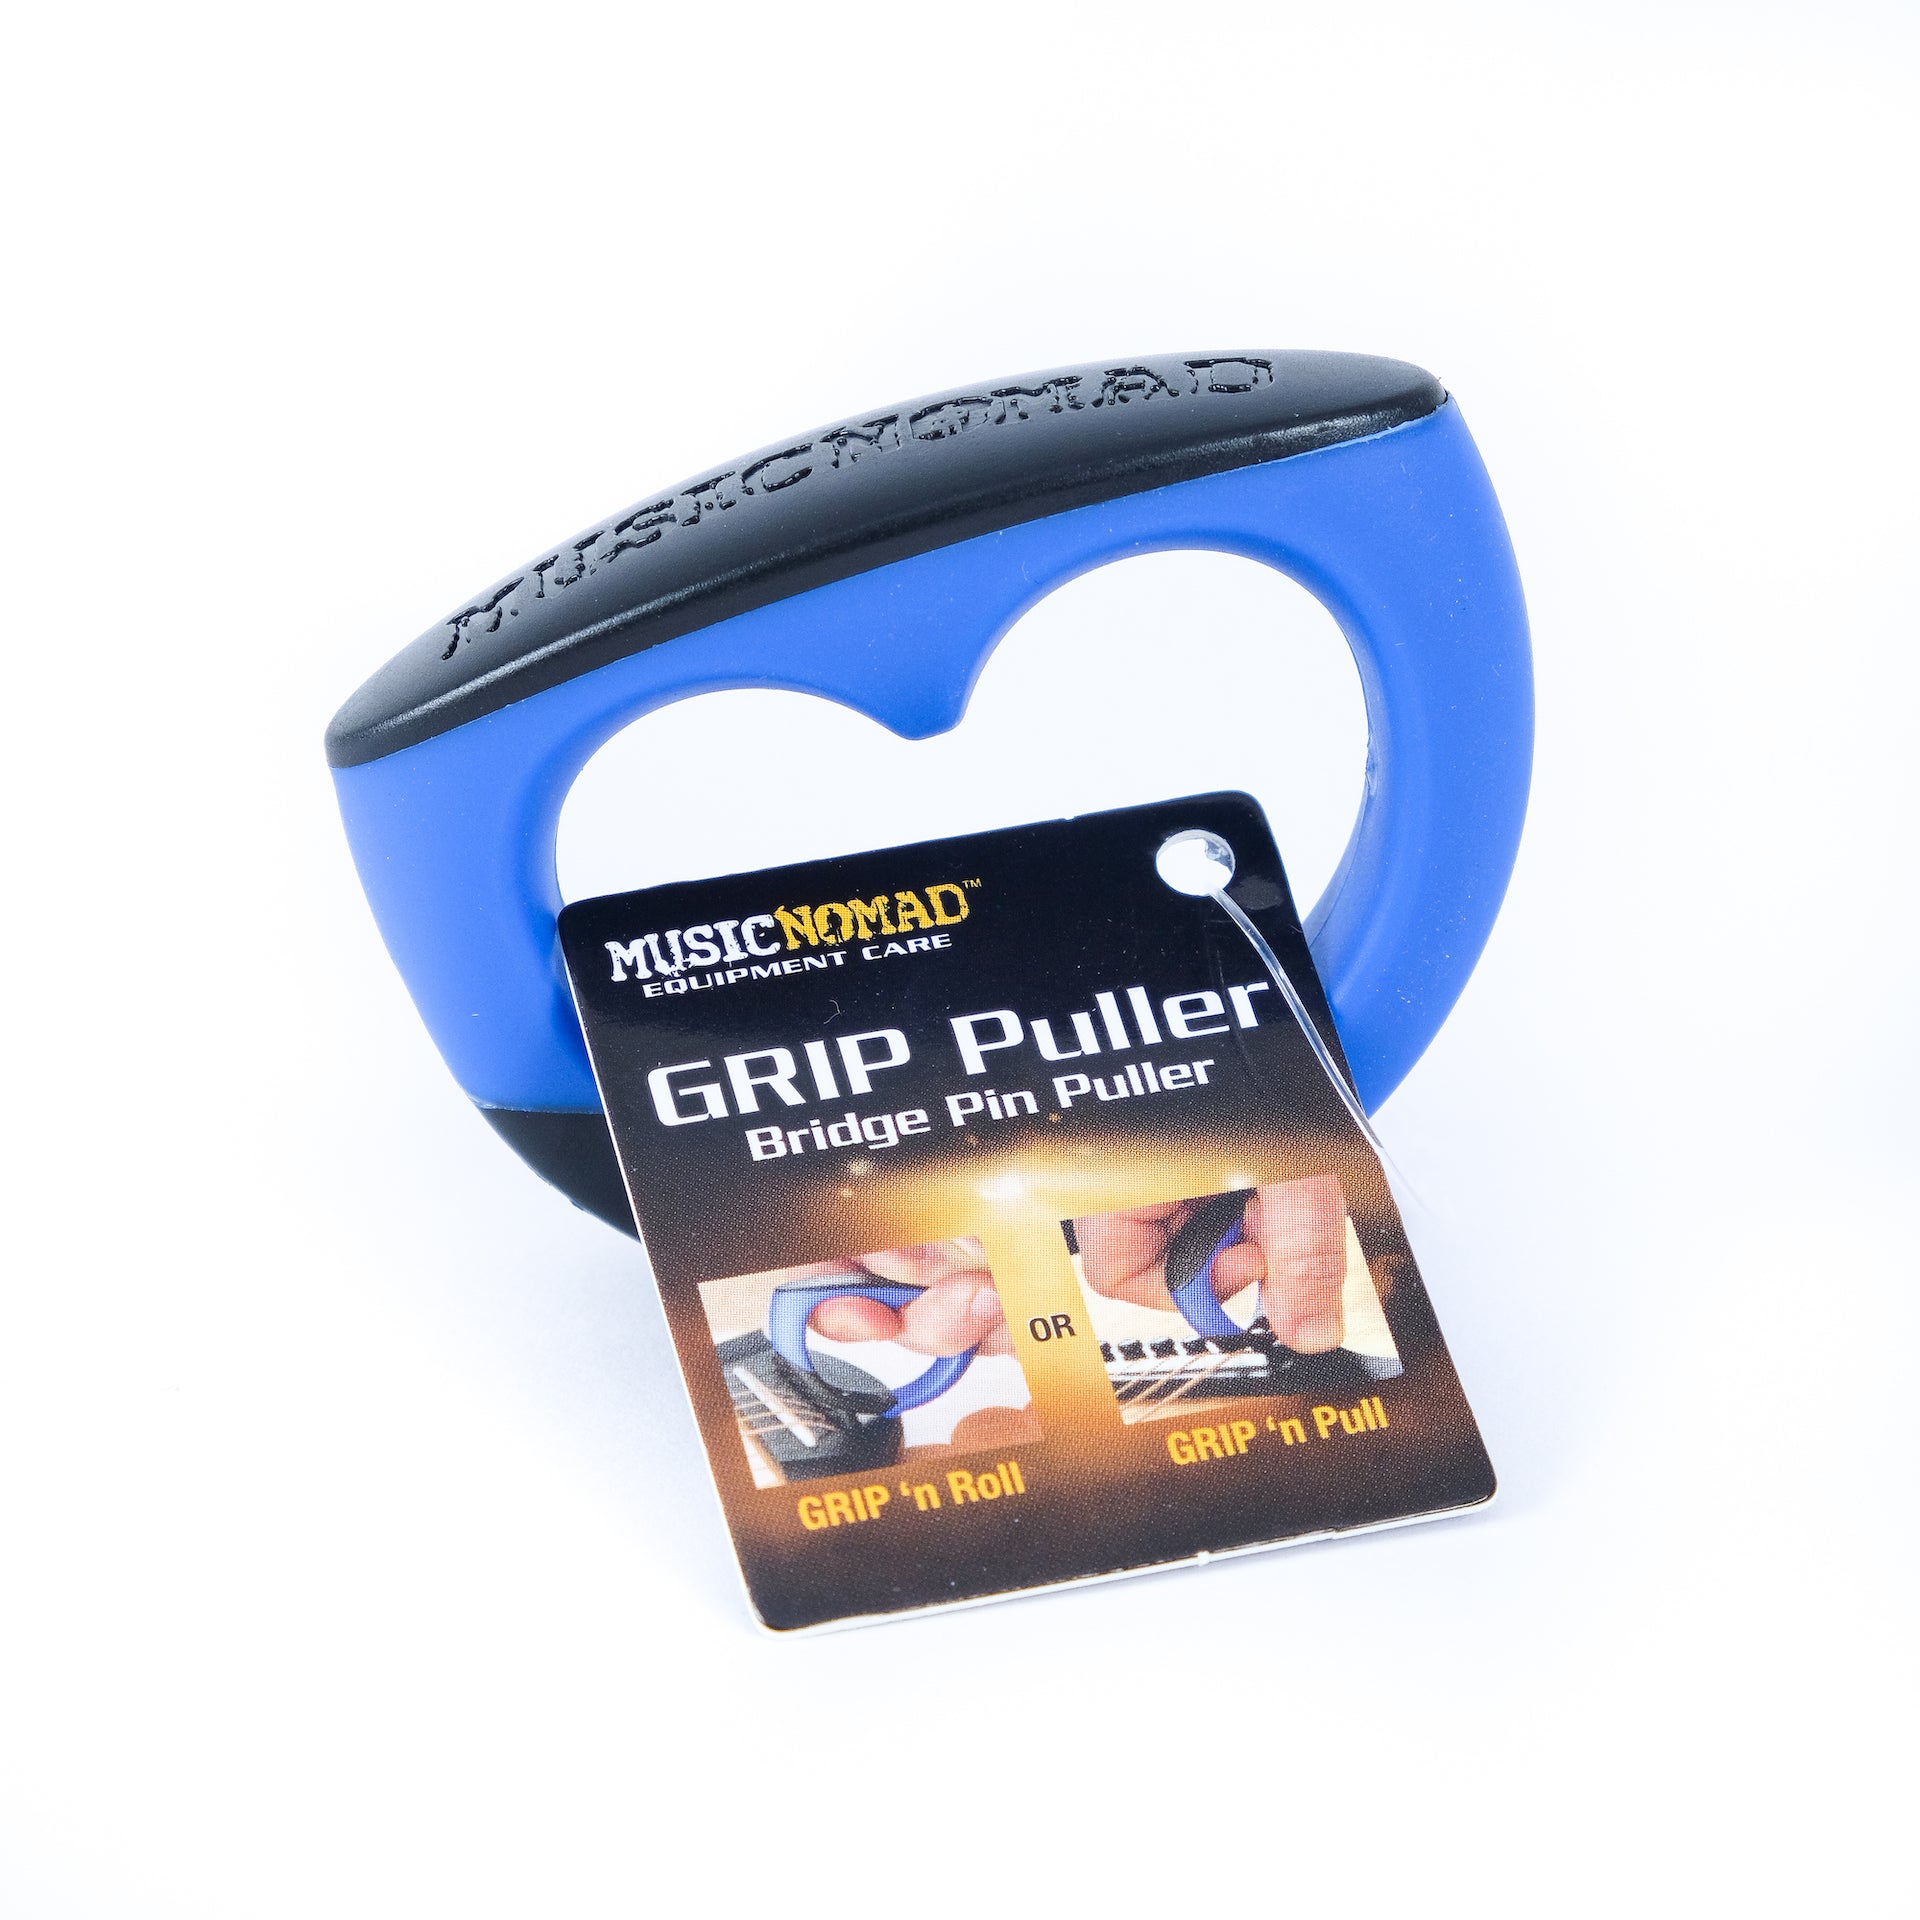 Music Nomad GRIP Puller - Premium Bridge Pin Puller MN219 - HIENDGUITAR   musicnomad musicnomad